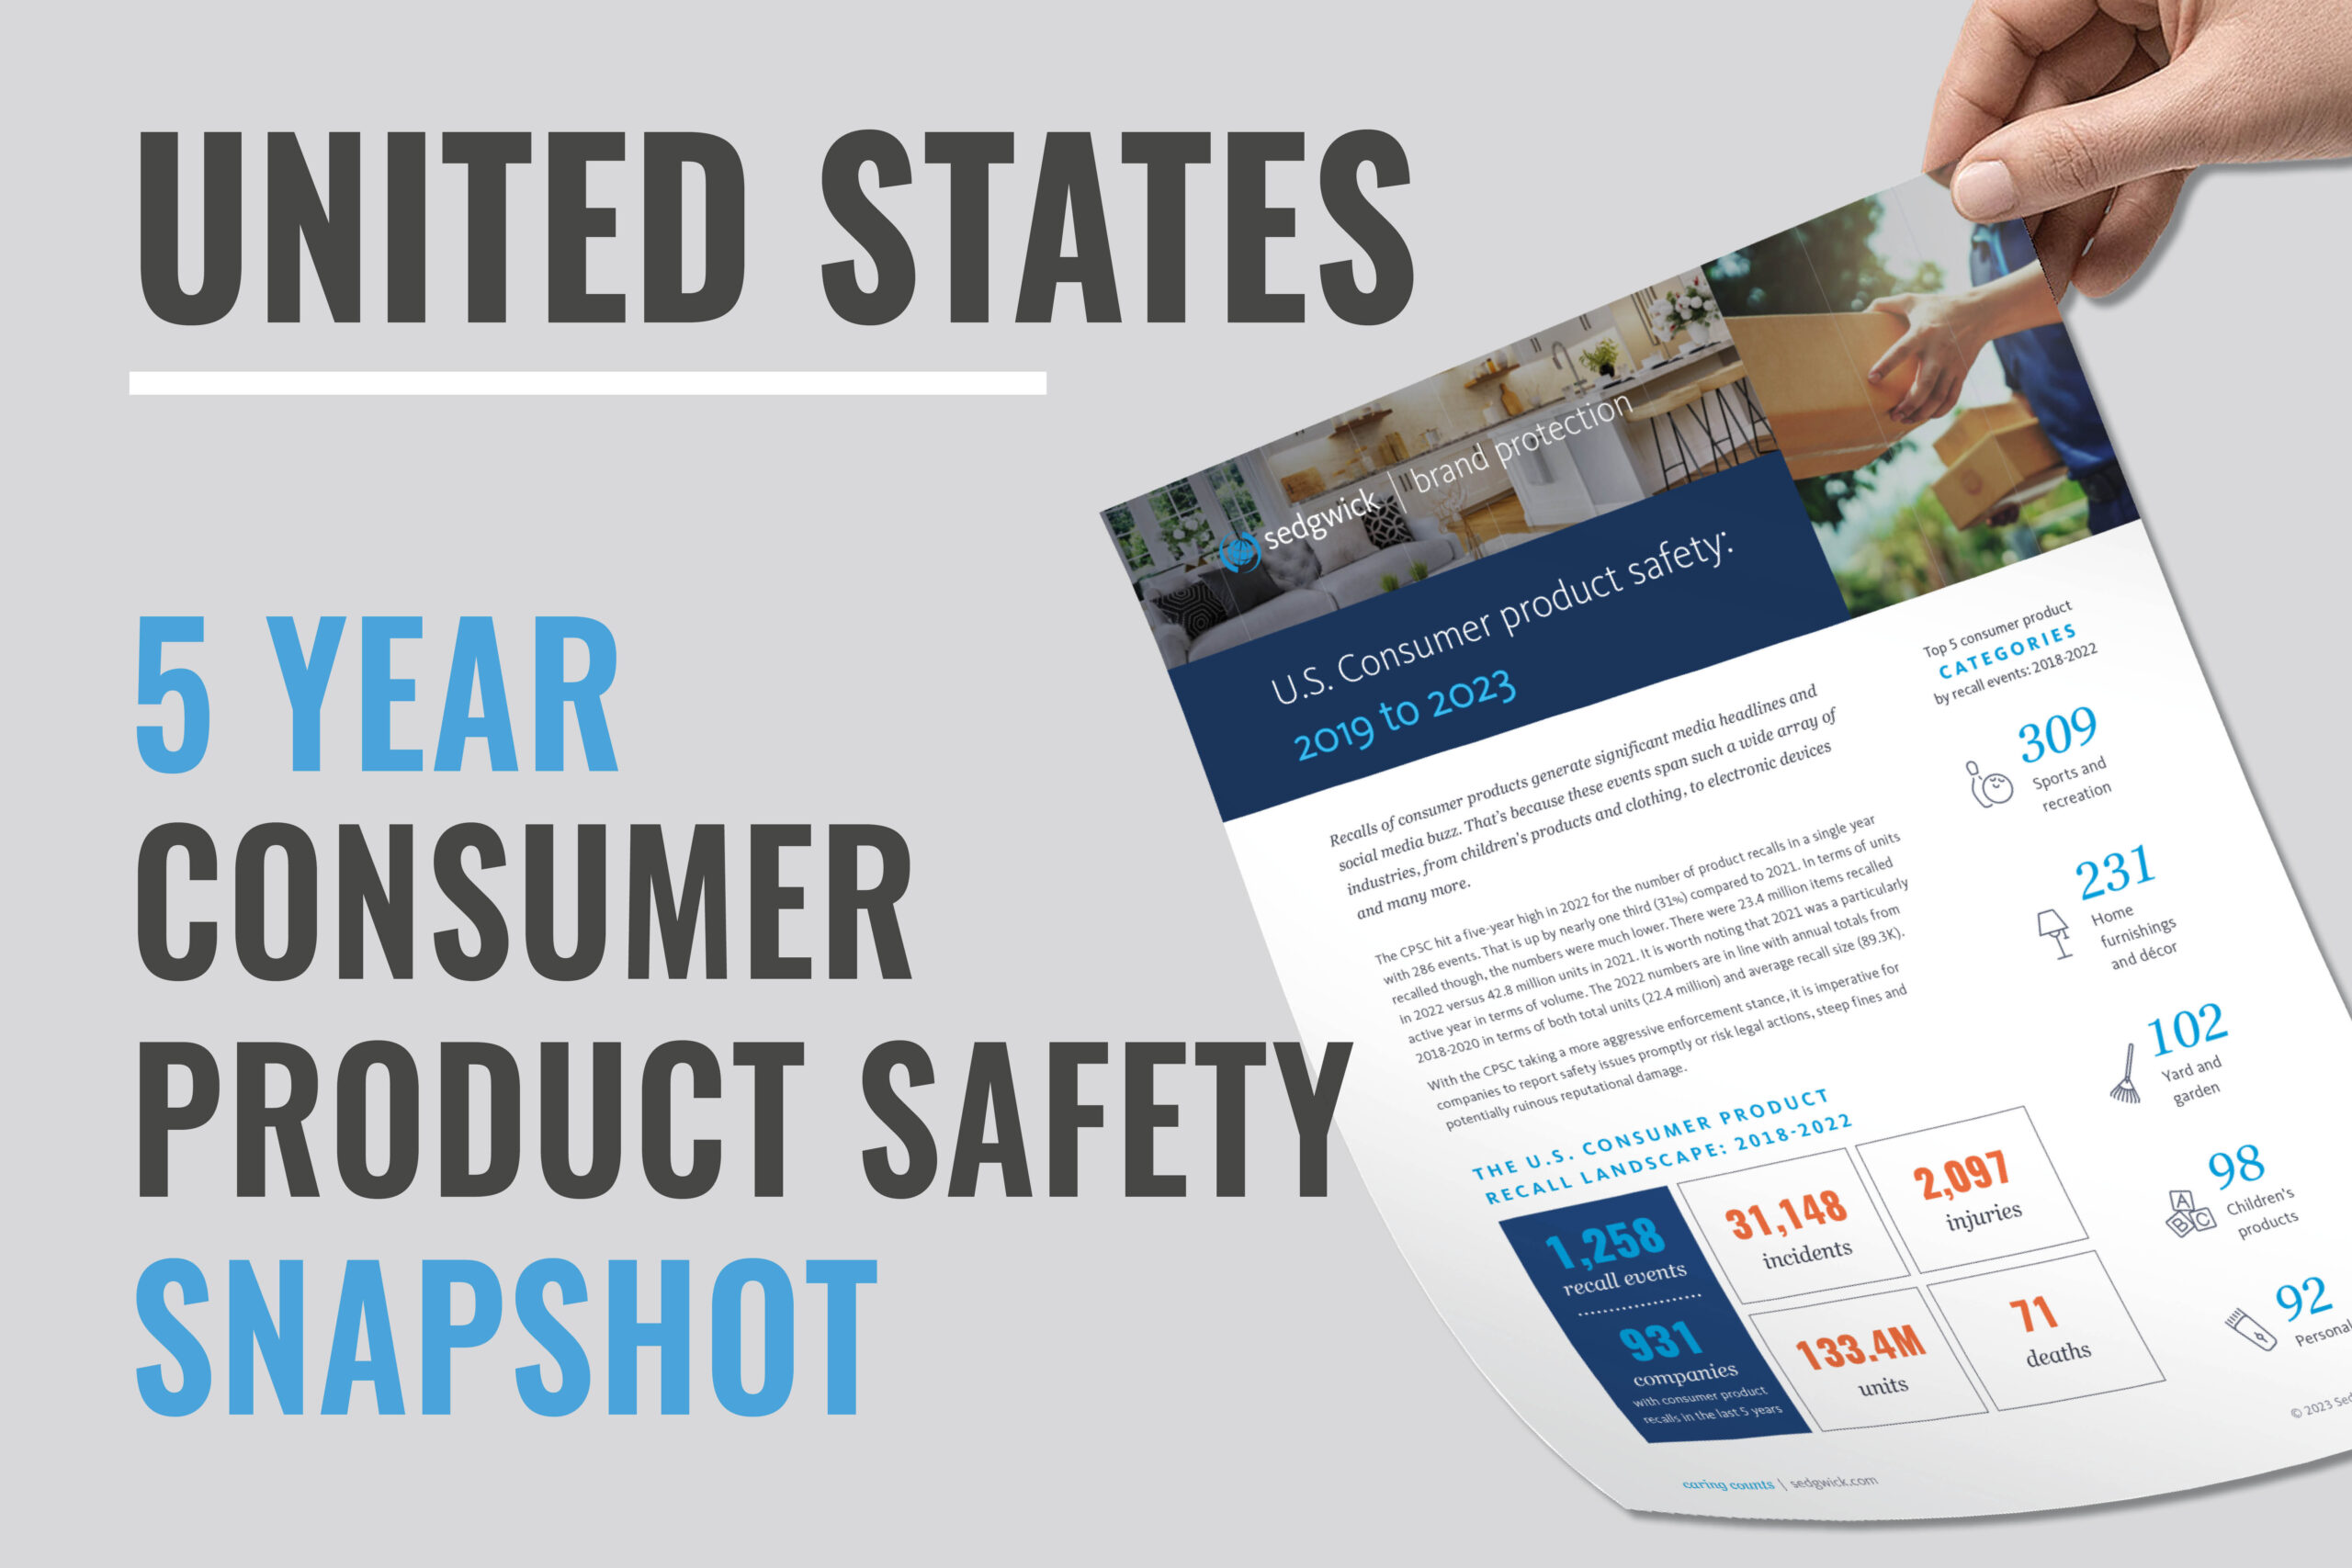 Segurança dos produtos de consumo dos EUA e informações sobre a retirada de produtos - Descarregar agora